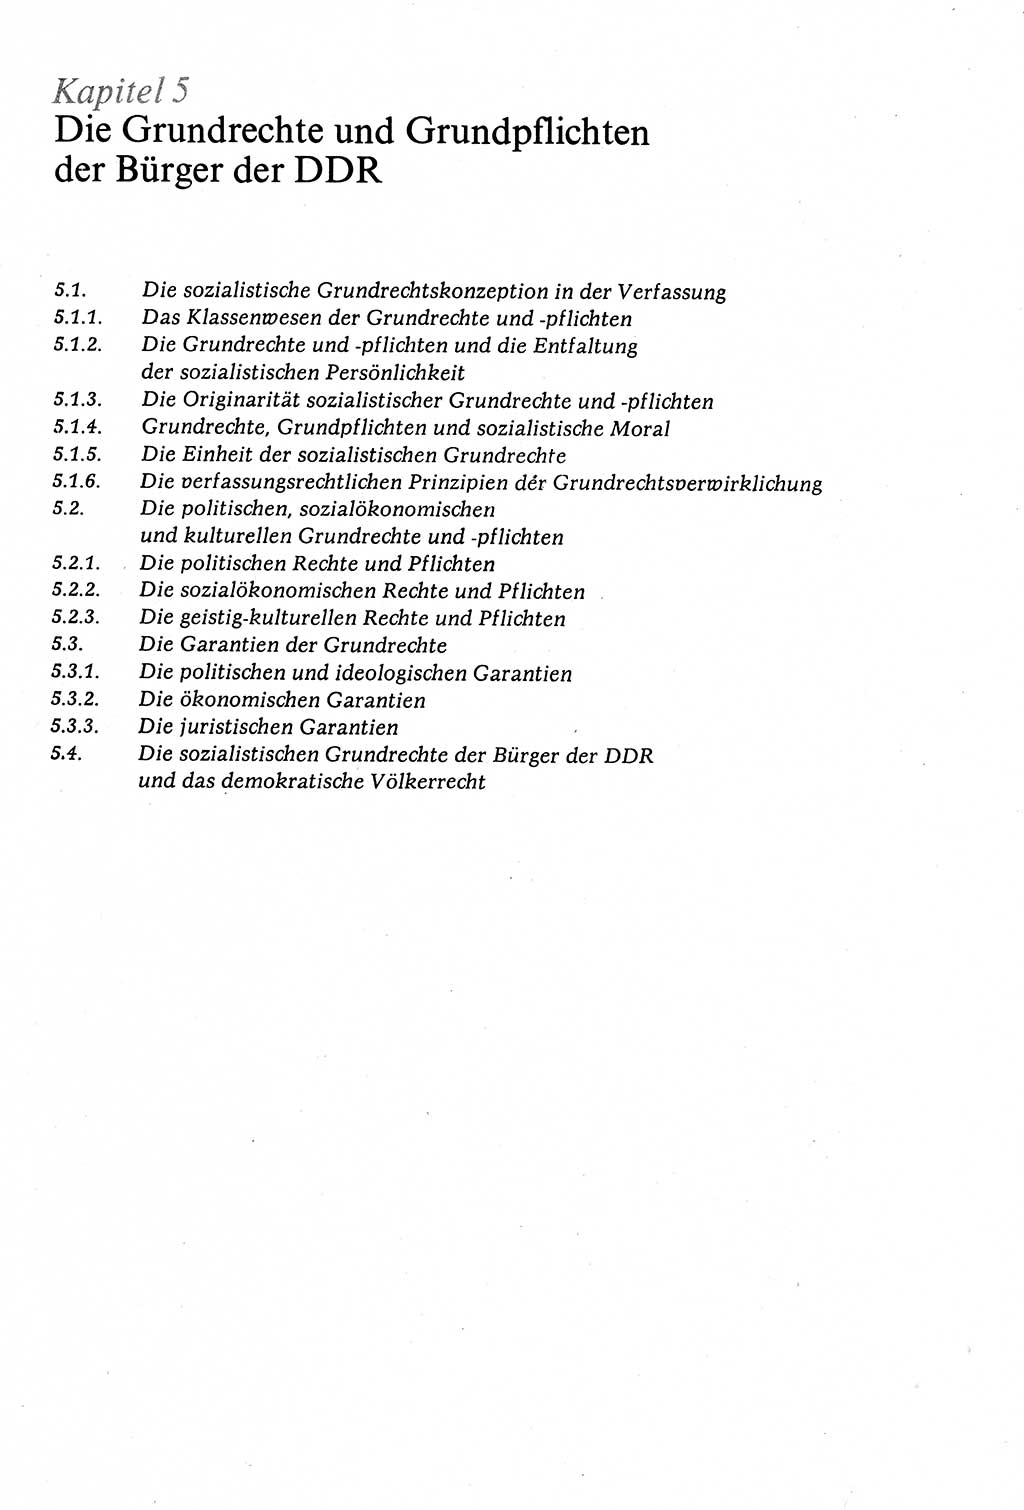 Staatsrecht der DDR (Deutsche Demokratische Republik), Lehrbuch 1977, Seite 175 (St.-R. DDR Lb. 1977, S. 175)